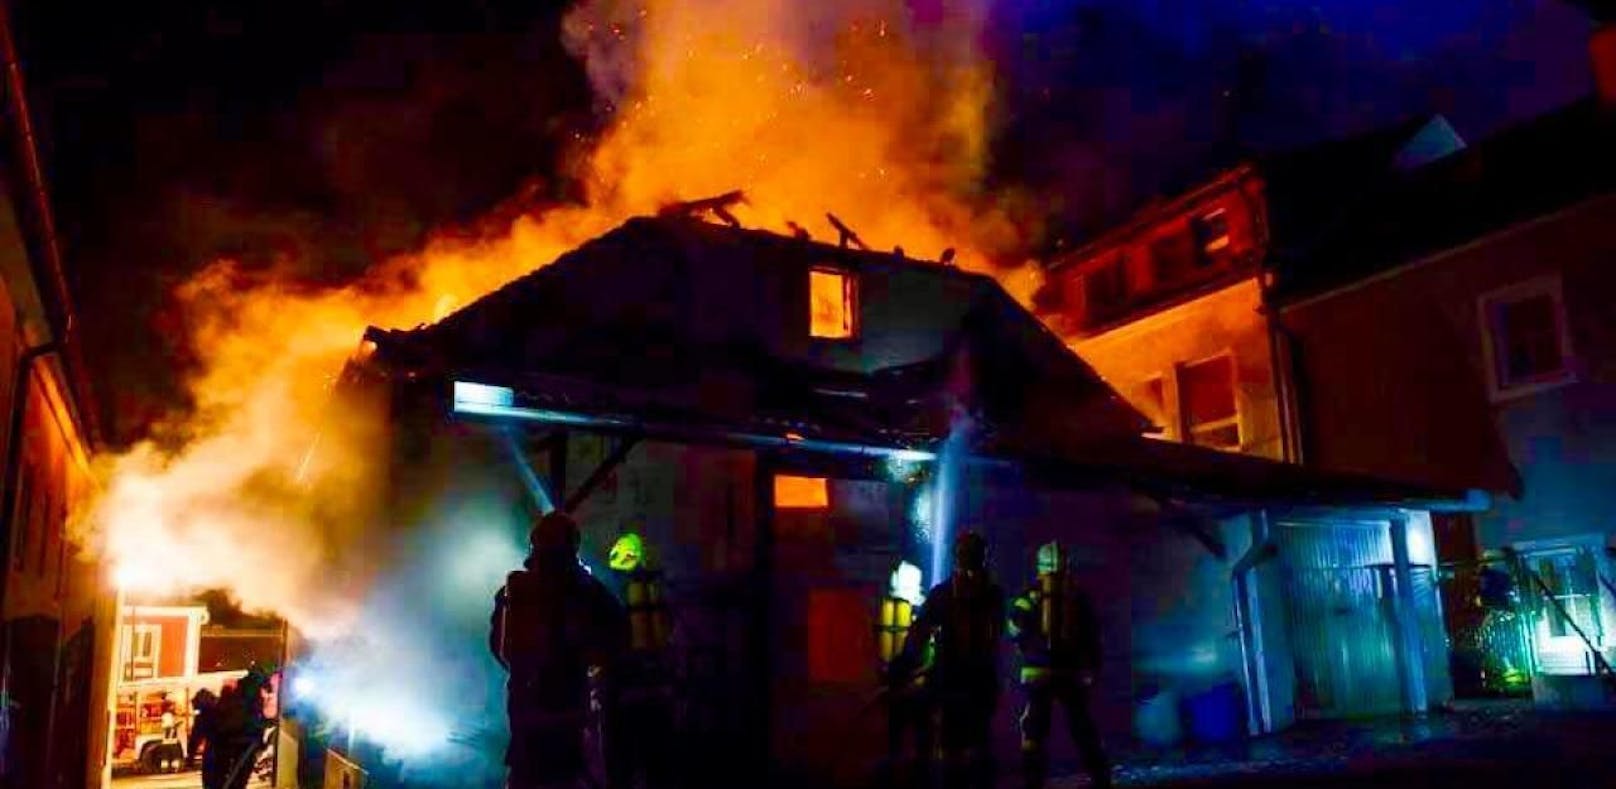 Haus brannte: Mutter und Sohn aus Feuer gerettet